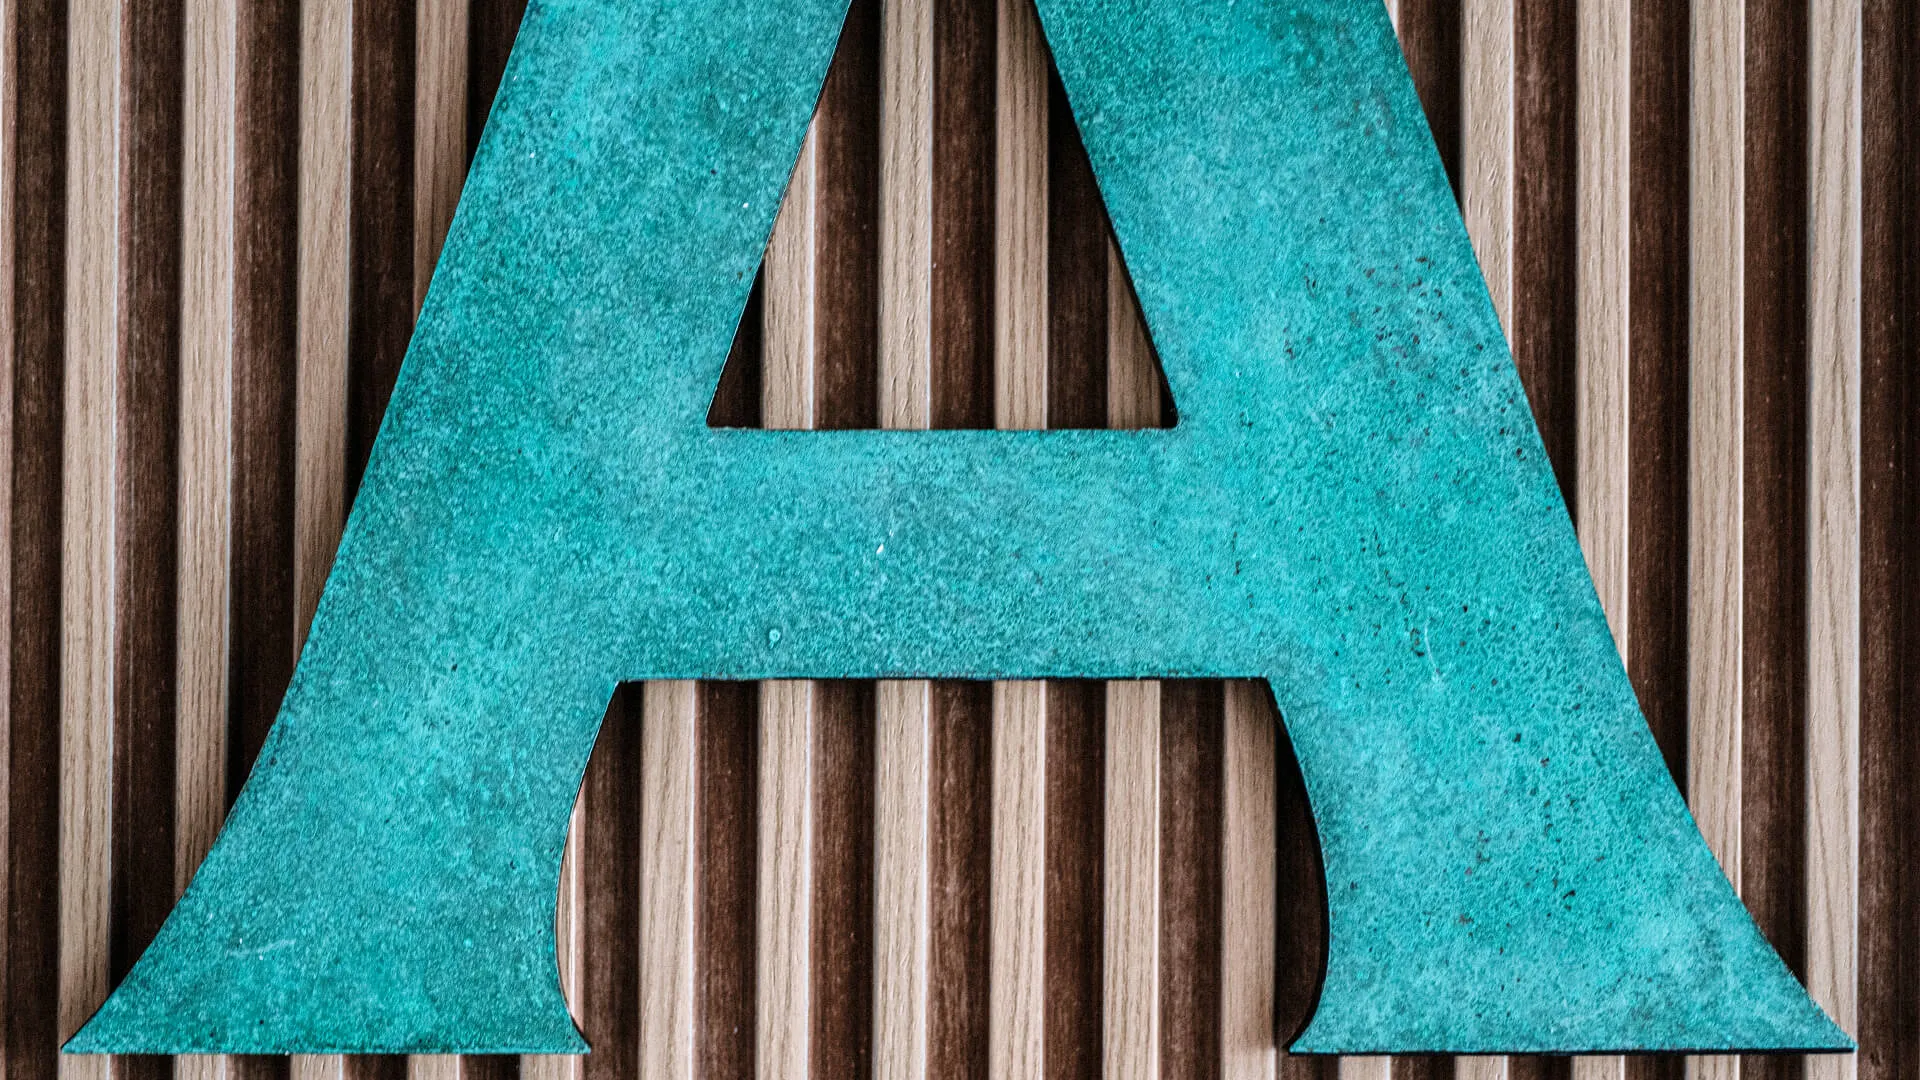 Litera A - wykonana z metalu w stylu industrialnym, pokryta patyną